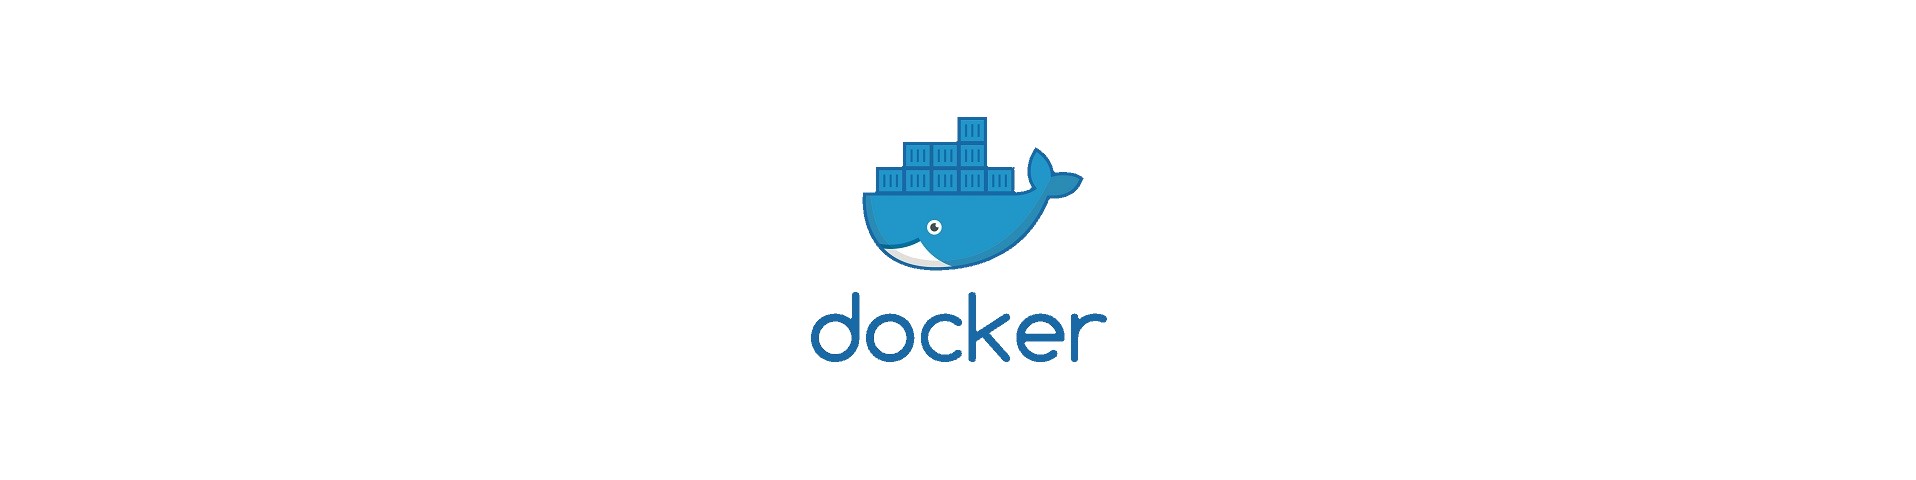 docker-compose部署ElasticSearch集群